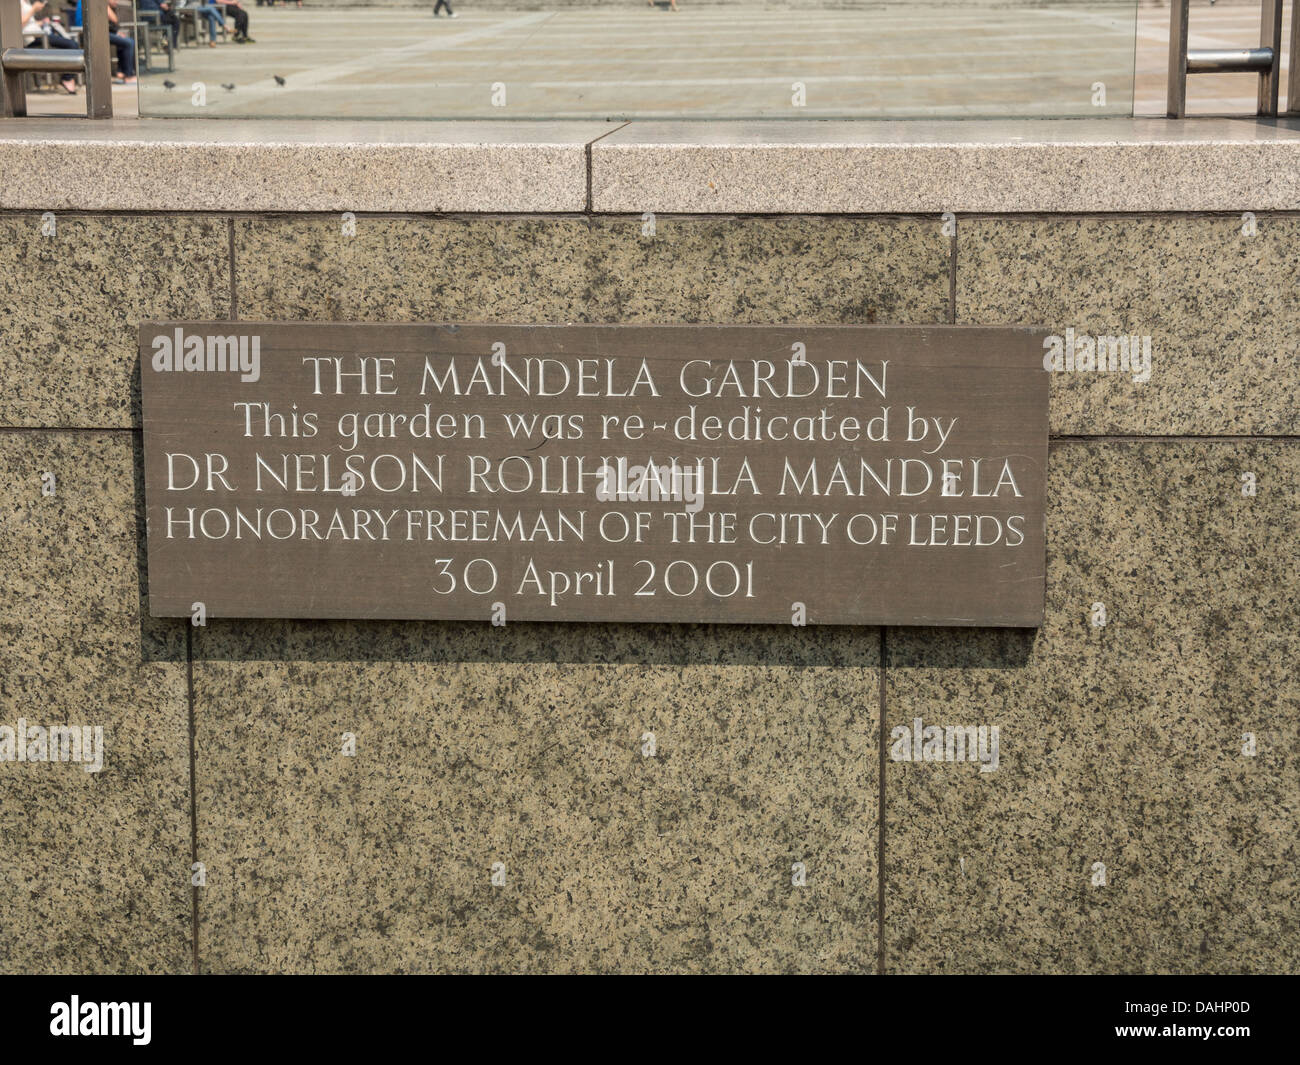 Leeds, UK. Mandela Garten erneuten Weihung 30.04.2001 plaque Stockfoto